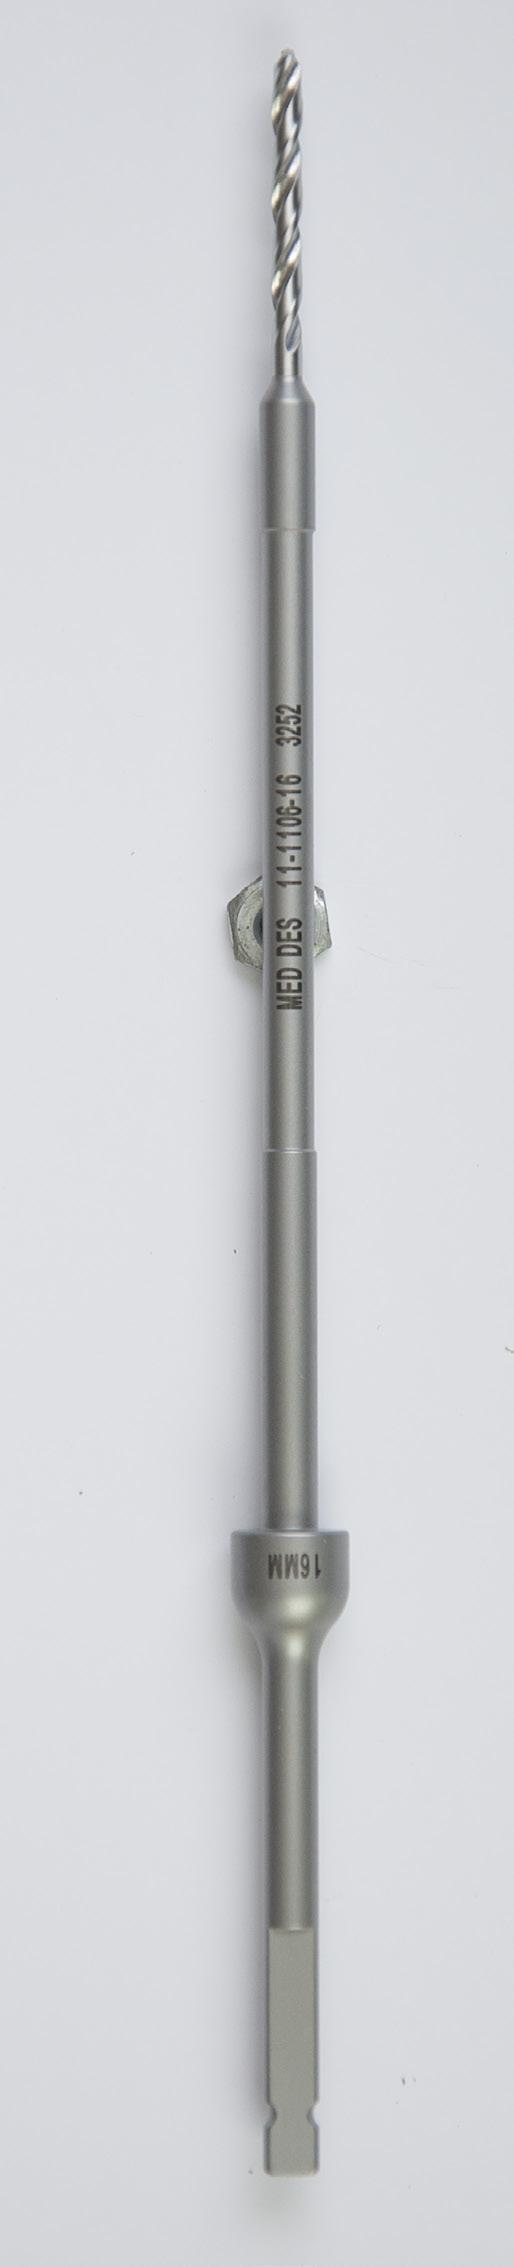 11-1106-FD16 Drill Bit (12mm)